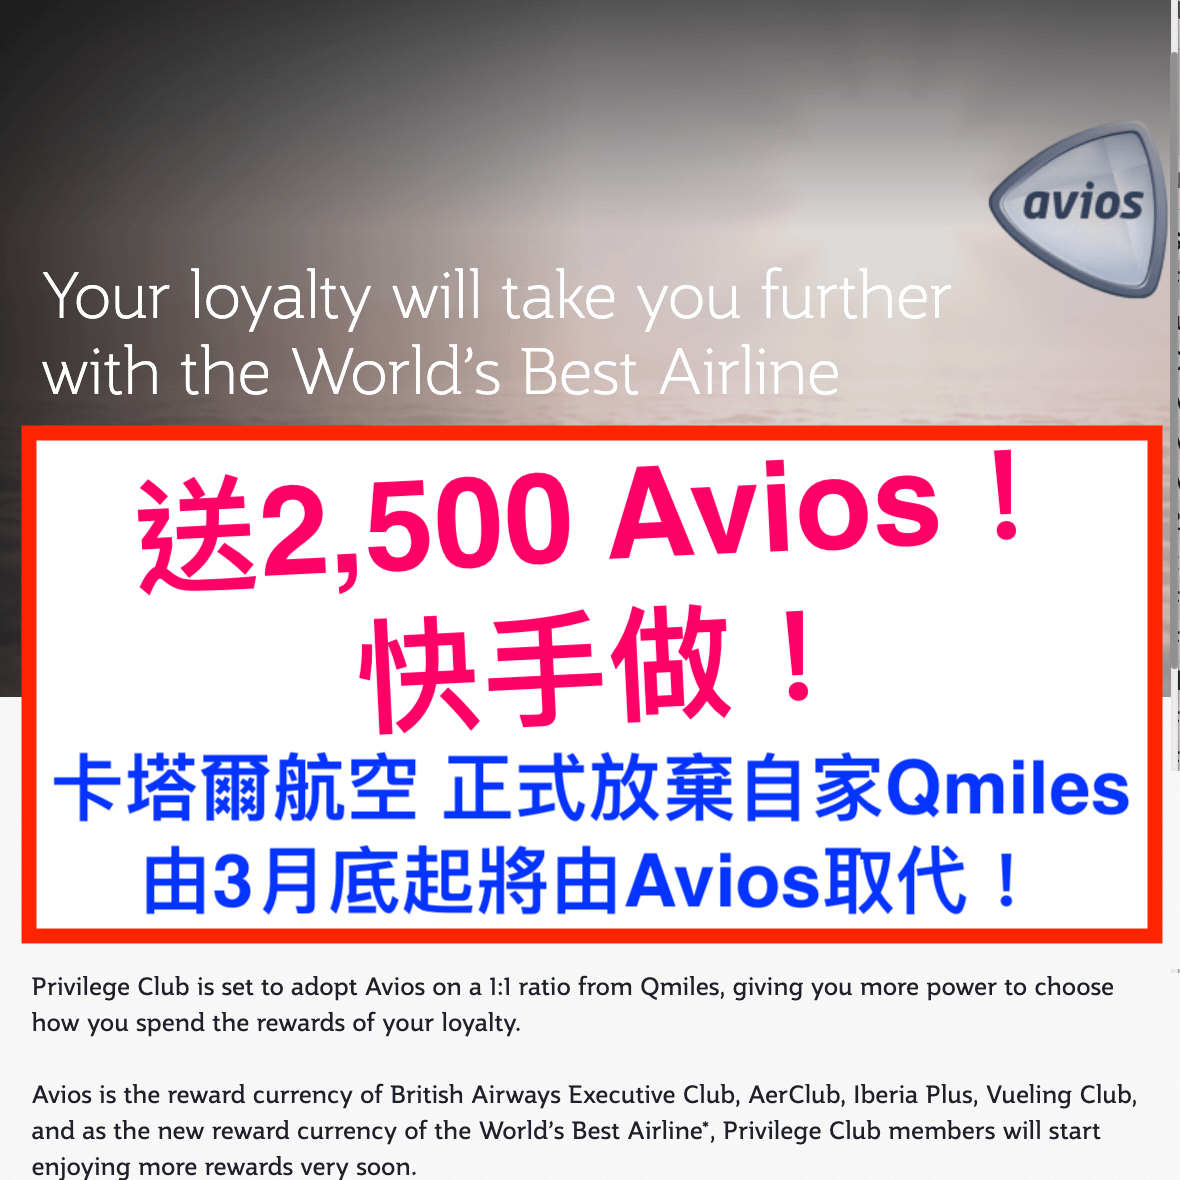 (免費送你2,500 Avios) 卡塔爾航空 Qatar Airways正式放棄自家Qmiles，由3月底起將由Avios取代！